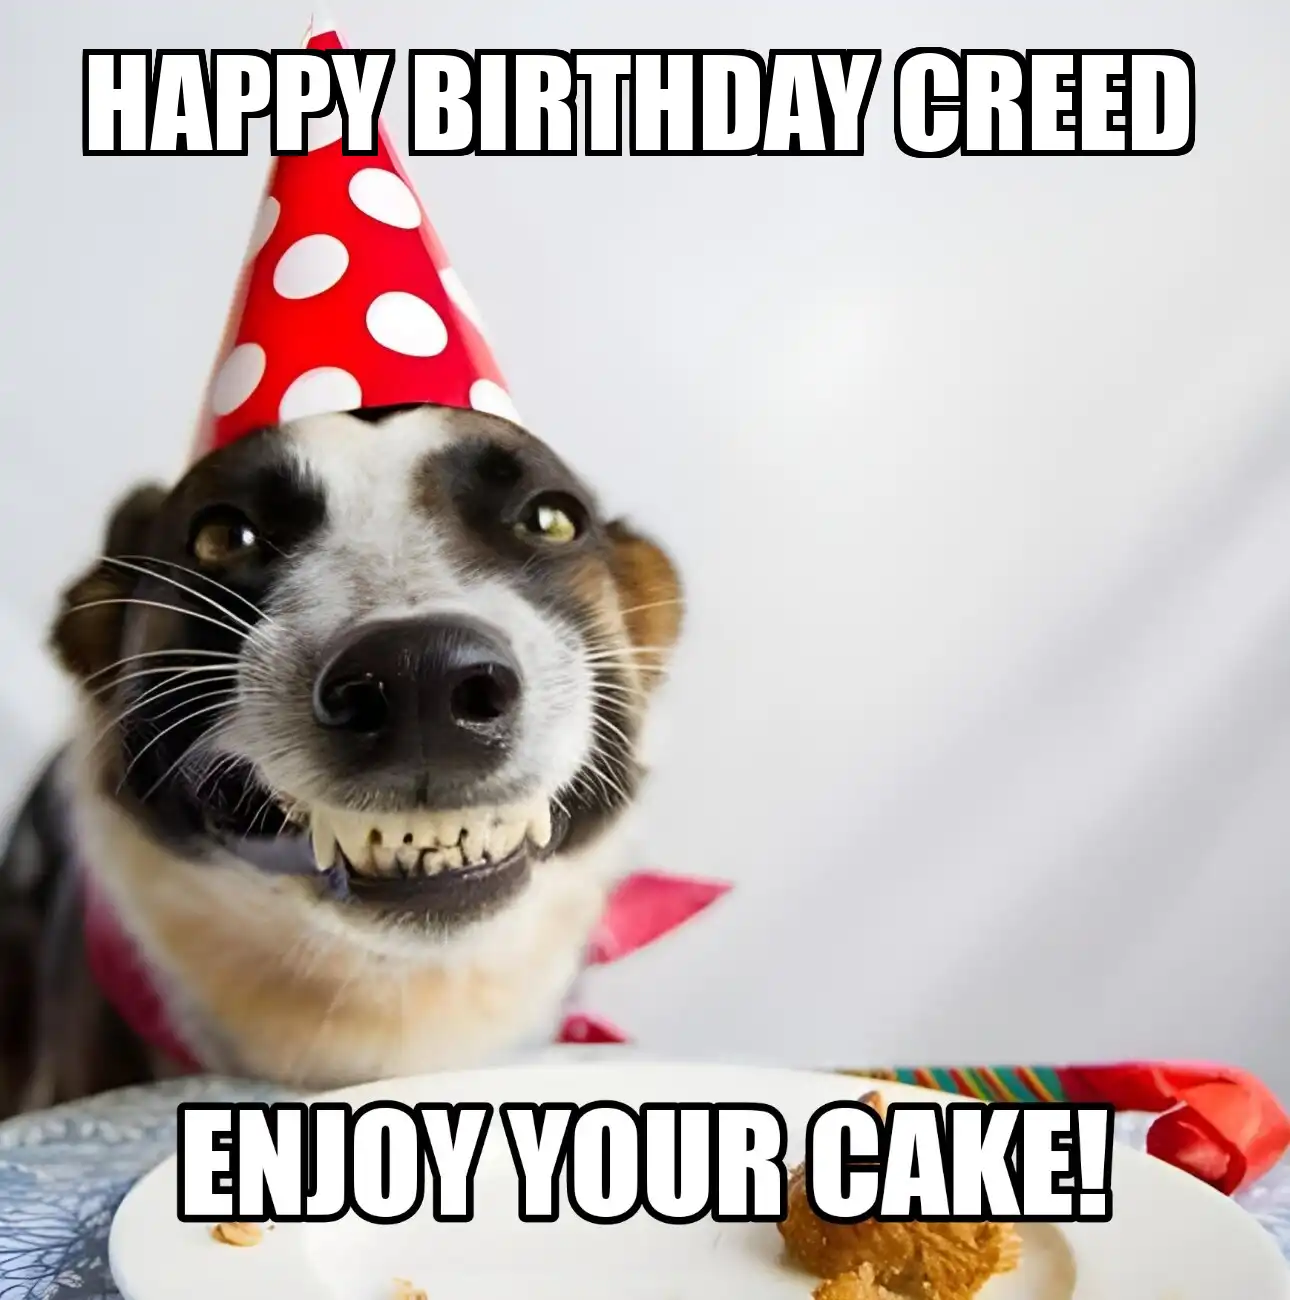 Happy Birthday Creed Enjoy Your Cake Dog Meme